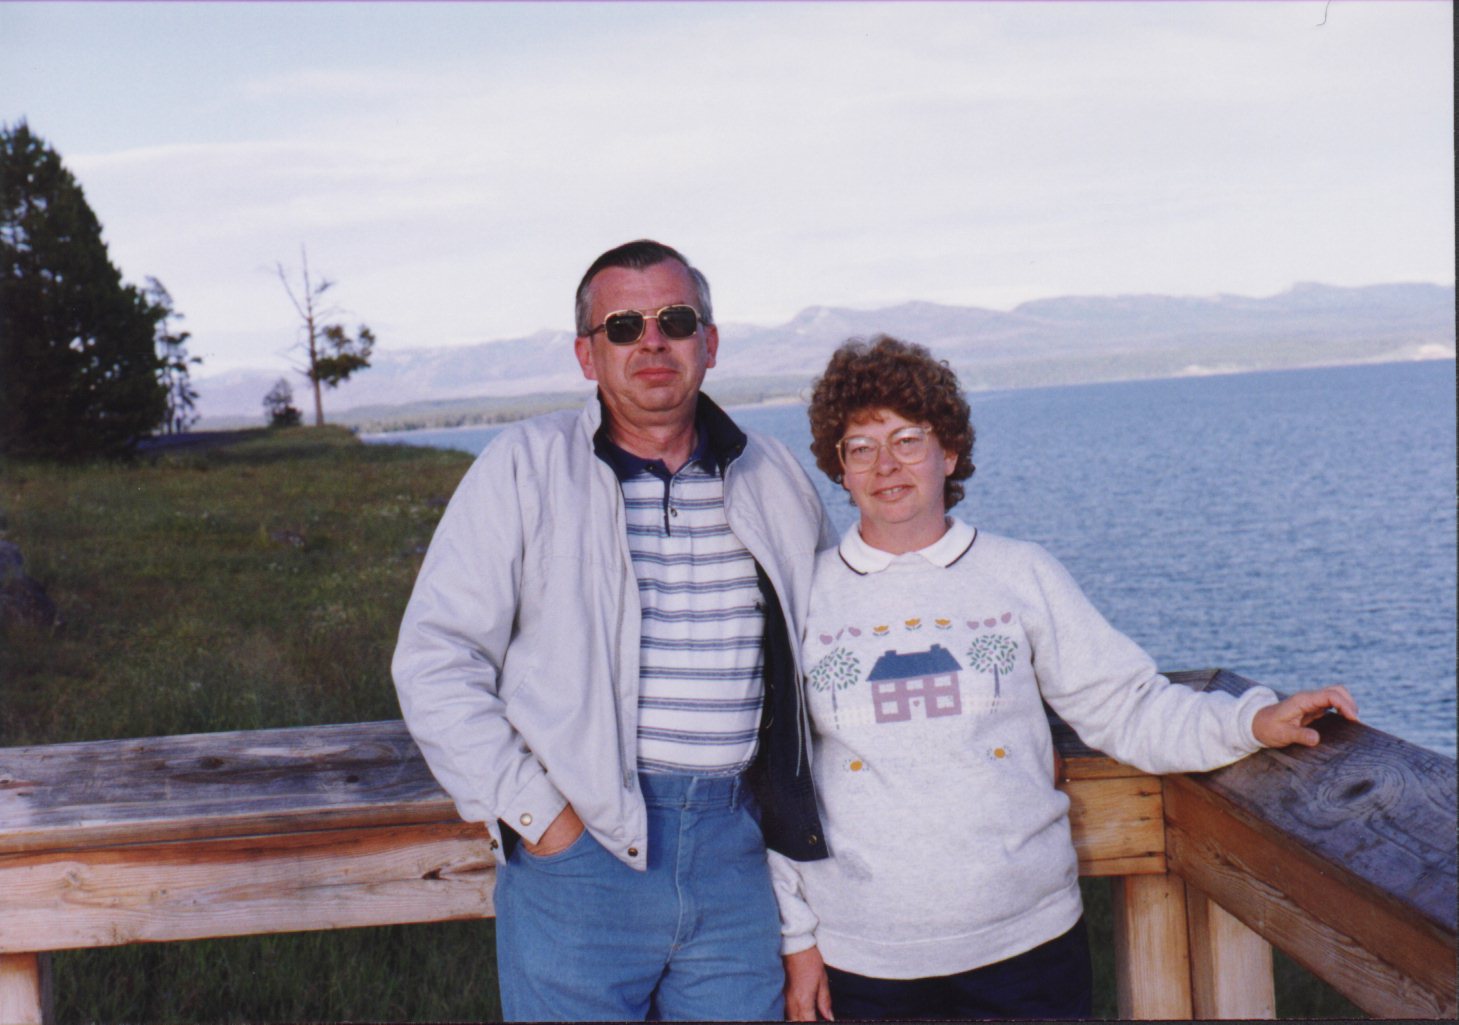 Us at Lake Yellowstone